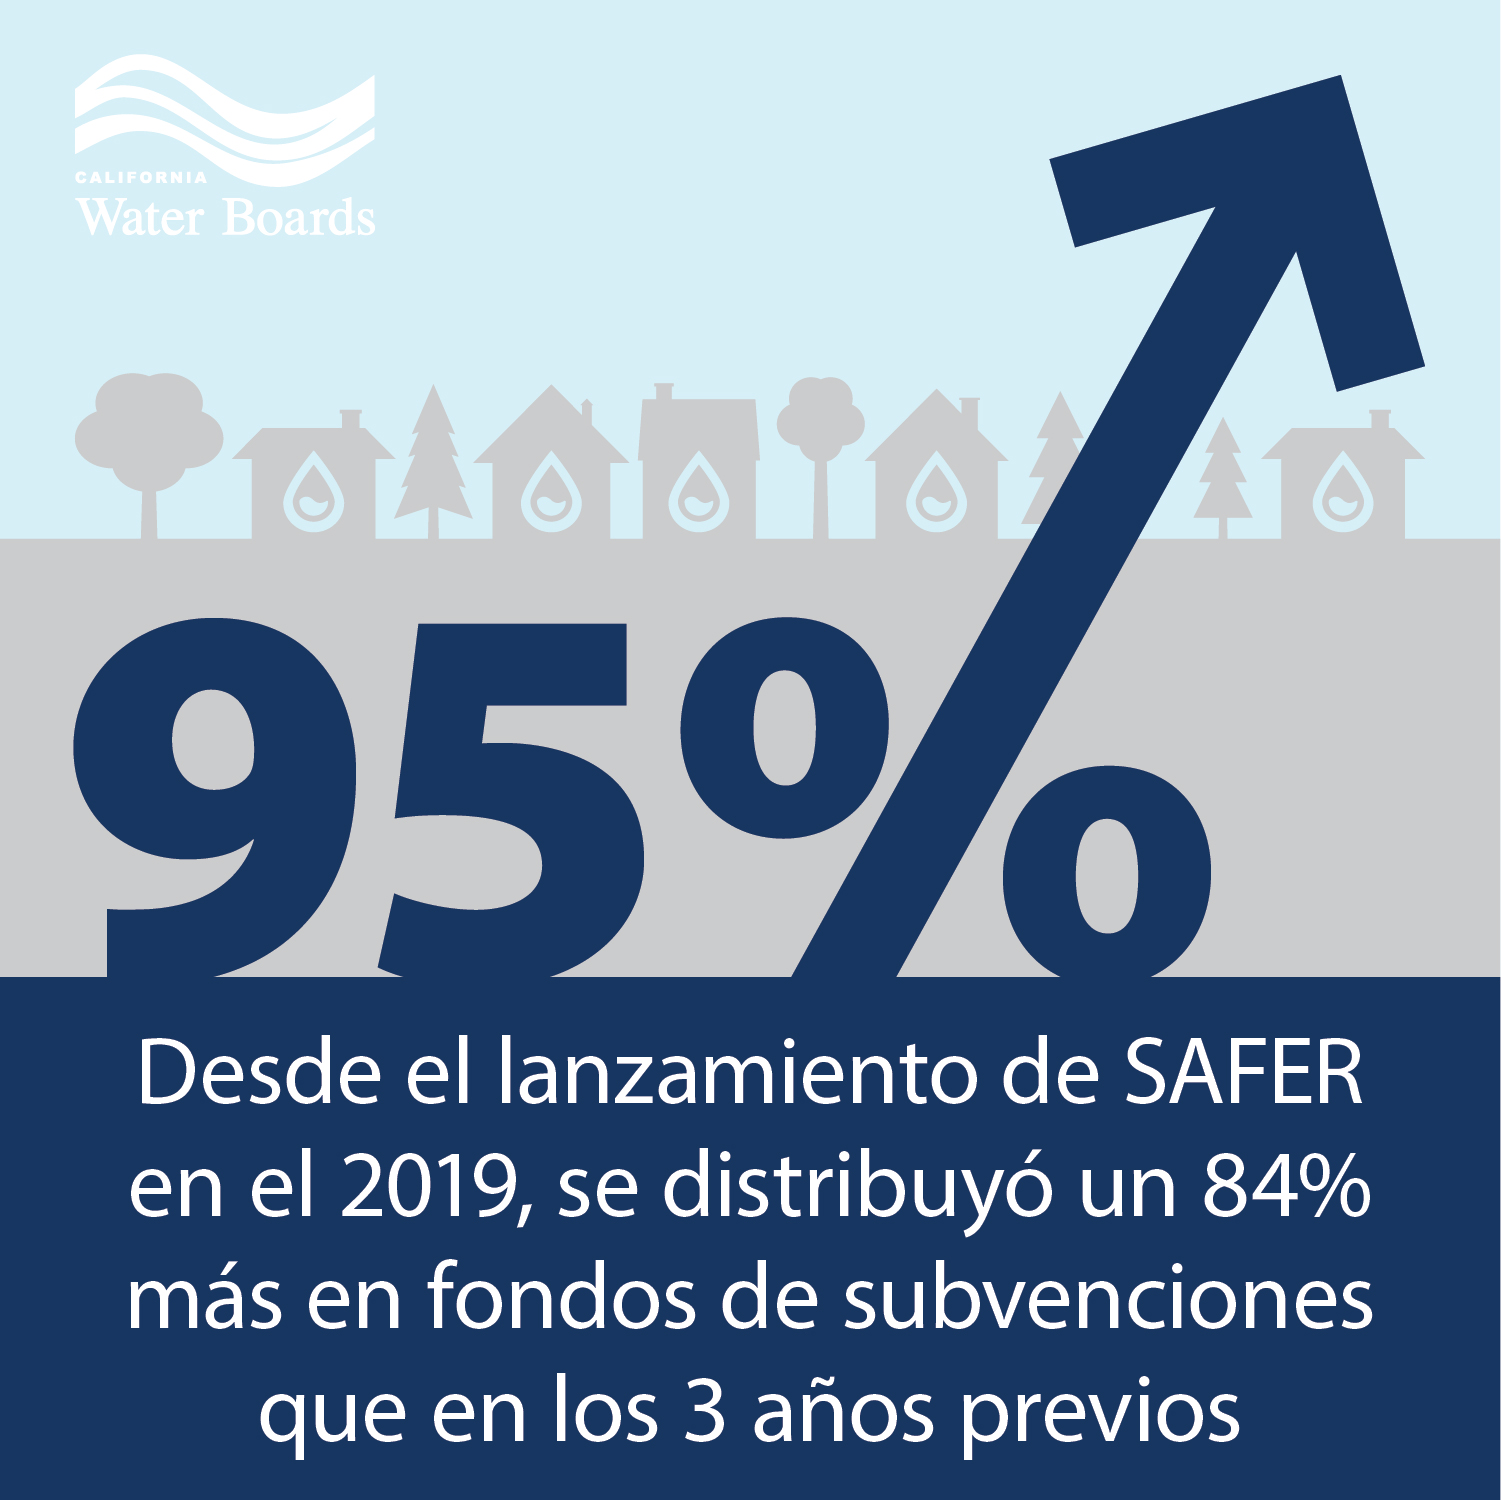 Desde el lanzamiento de SAFER en el 2019, se distribuyó un 84% más en fondos de subvensiones que en los 3 años previos